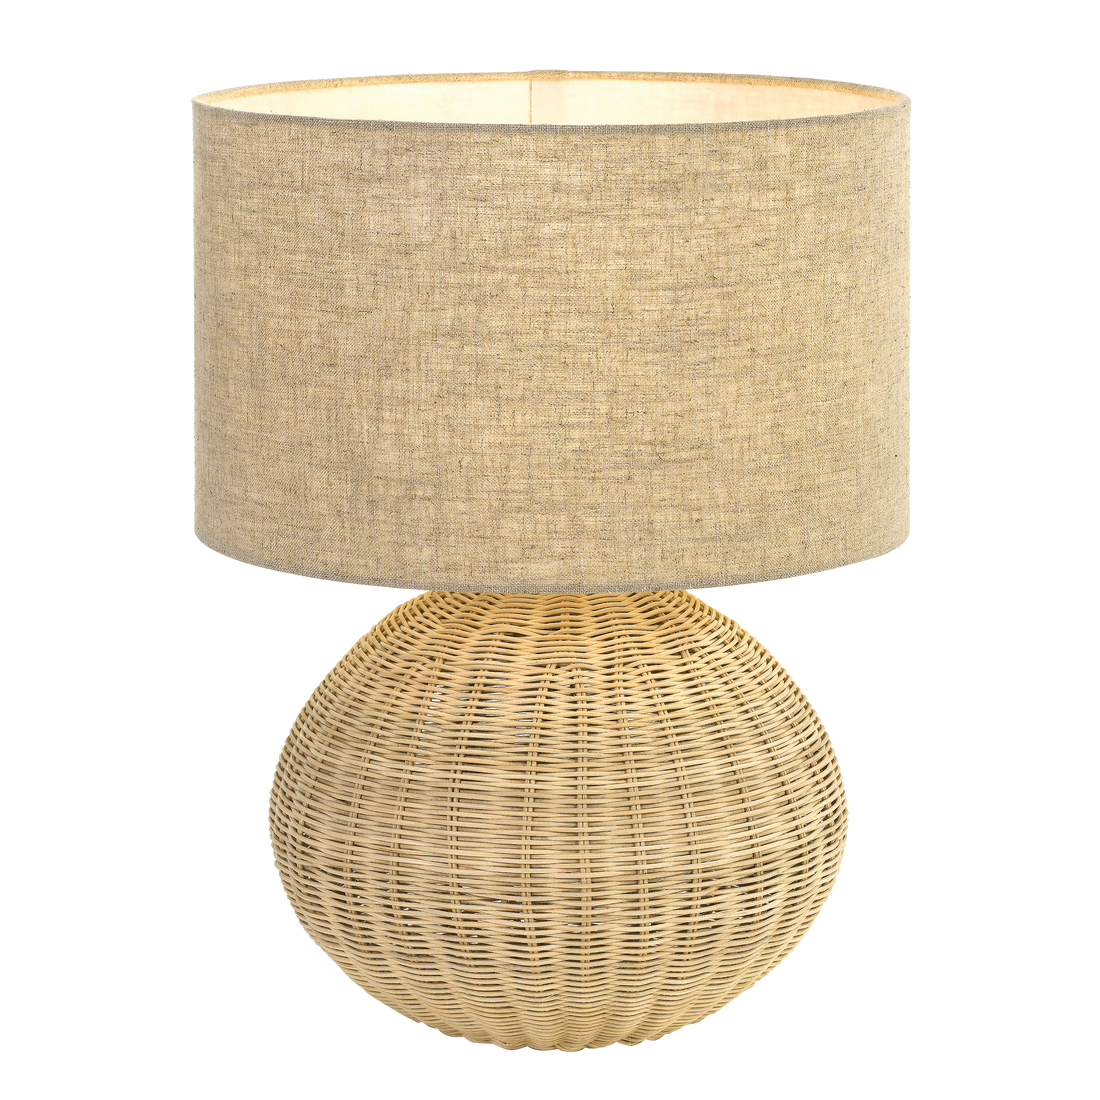 Mohan Sand Rattan Woven Ball Table Lamp